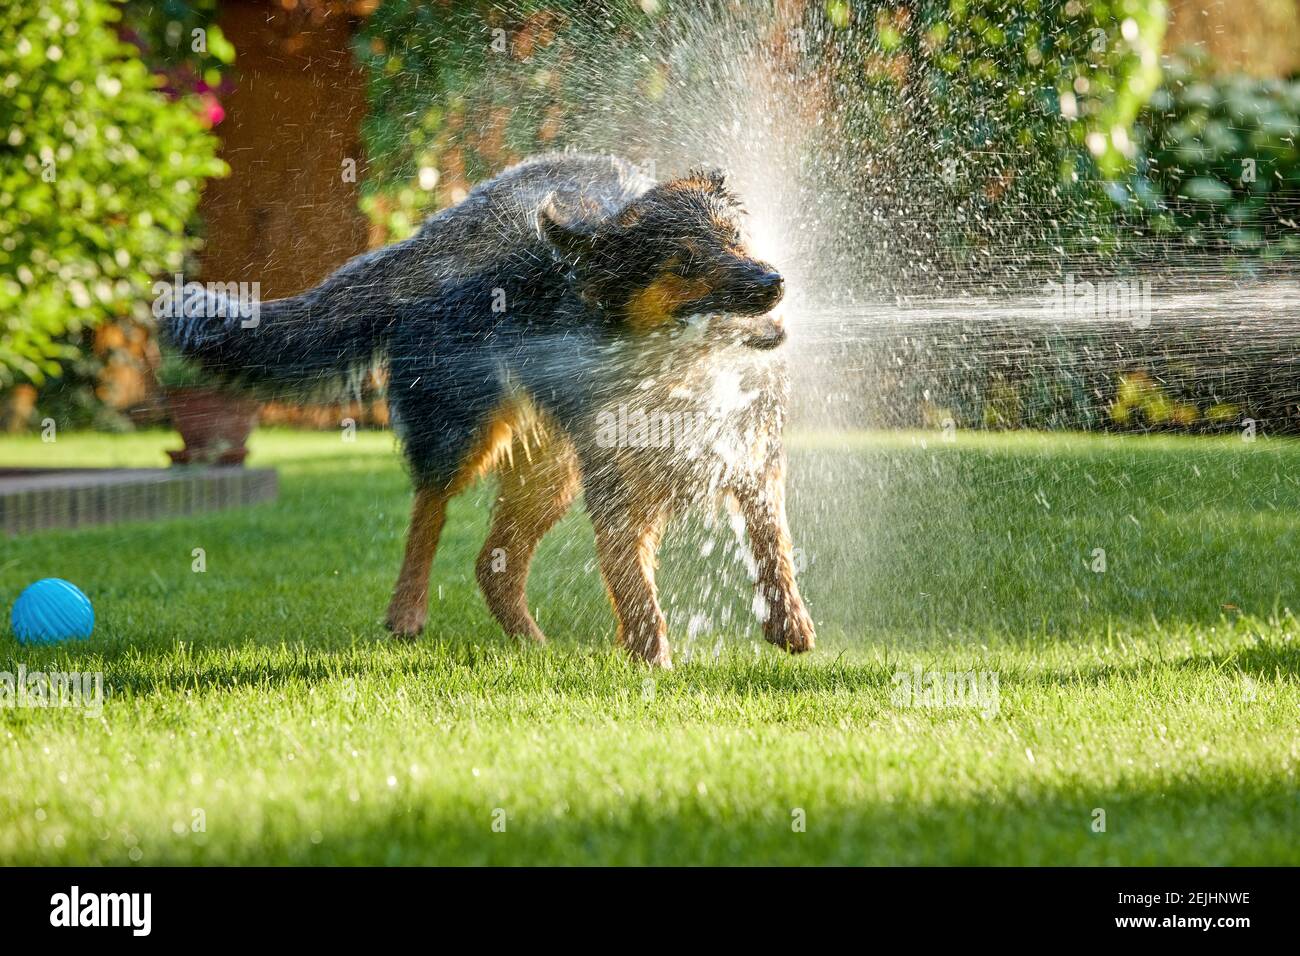 Böhmischer Schäferhund, haariger Hund, der im Garten mit Wasserbach spielt, überall Wasser spritzt. Foto mit Hintergrundbeleuchtung, sonniger Tag. Familienhundeaktivitäten. Stockfoto